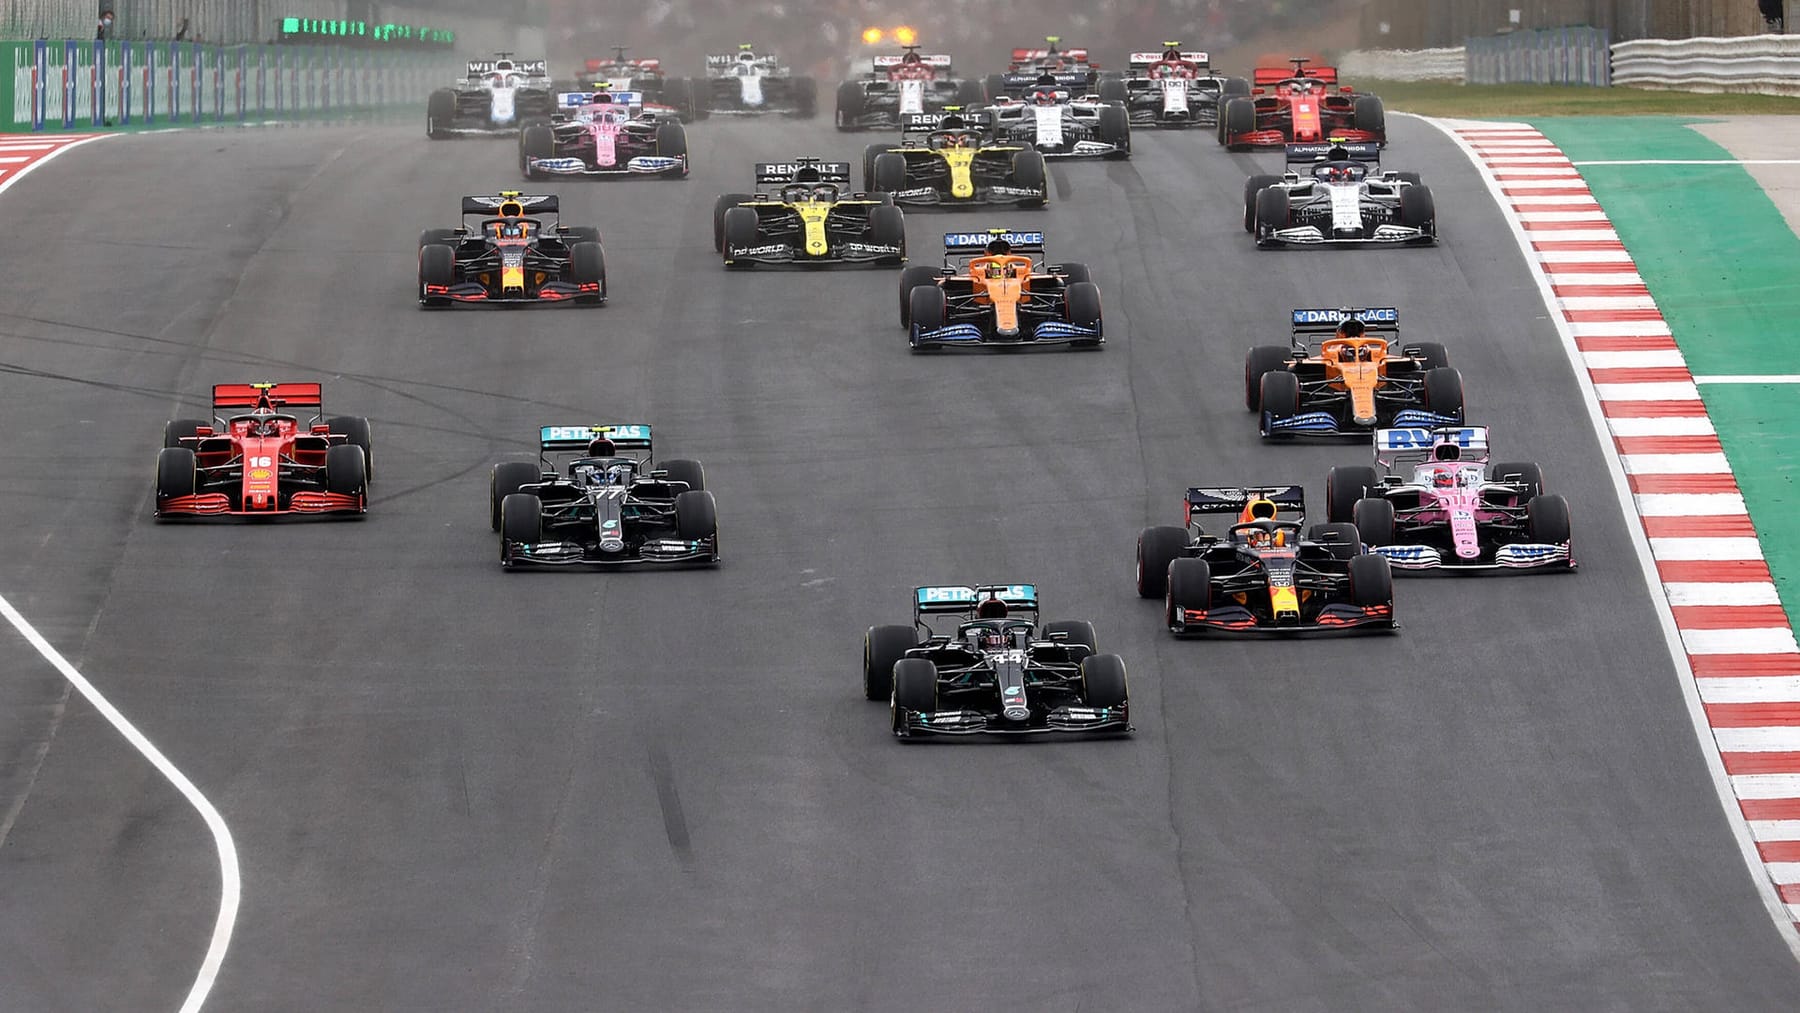 Pay-TV-Sender Sky startet neuen Sender für die Formel 1